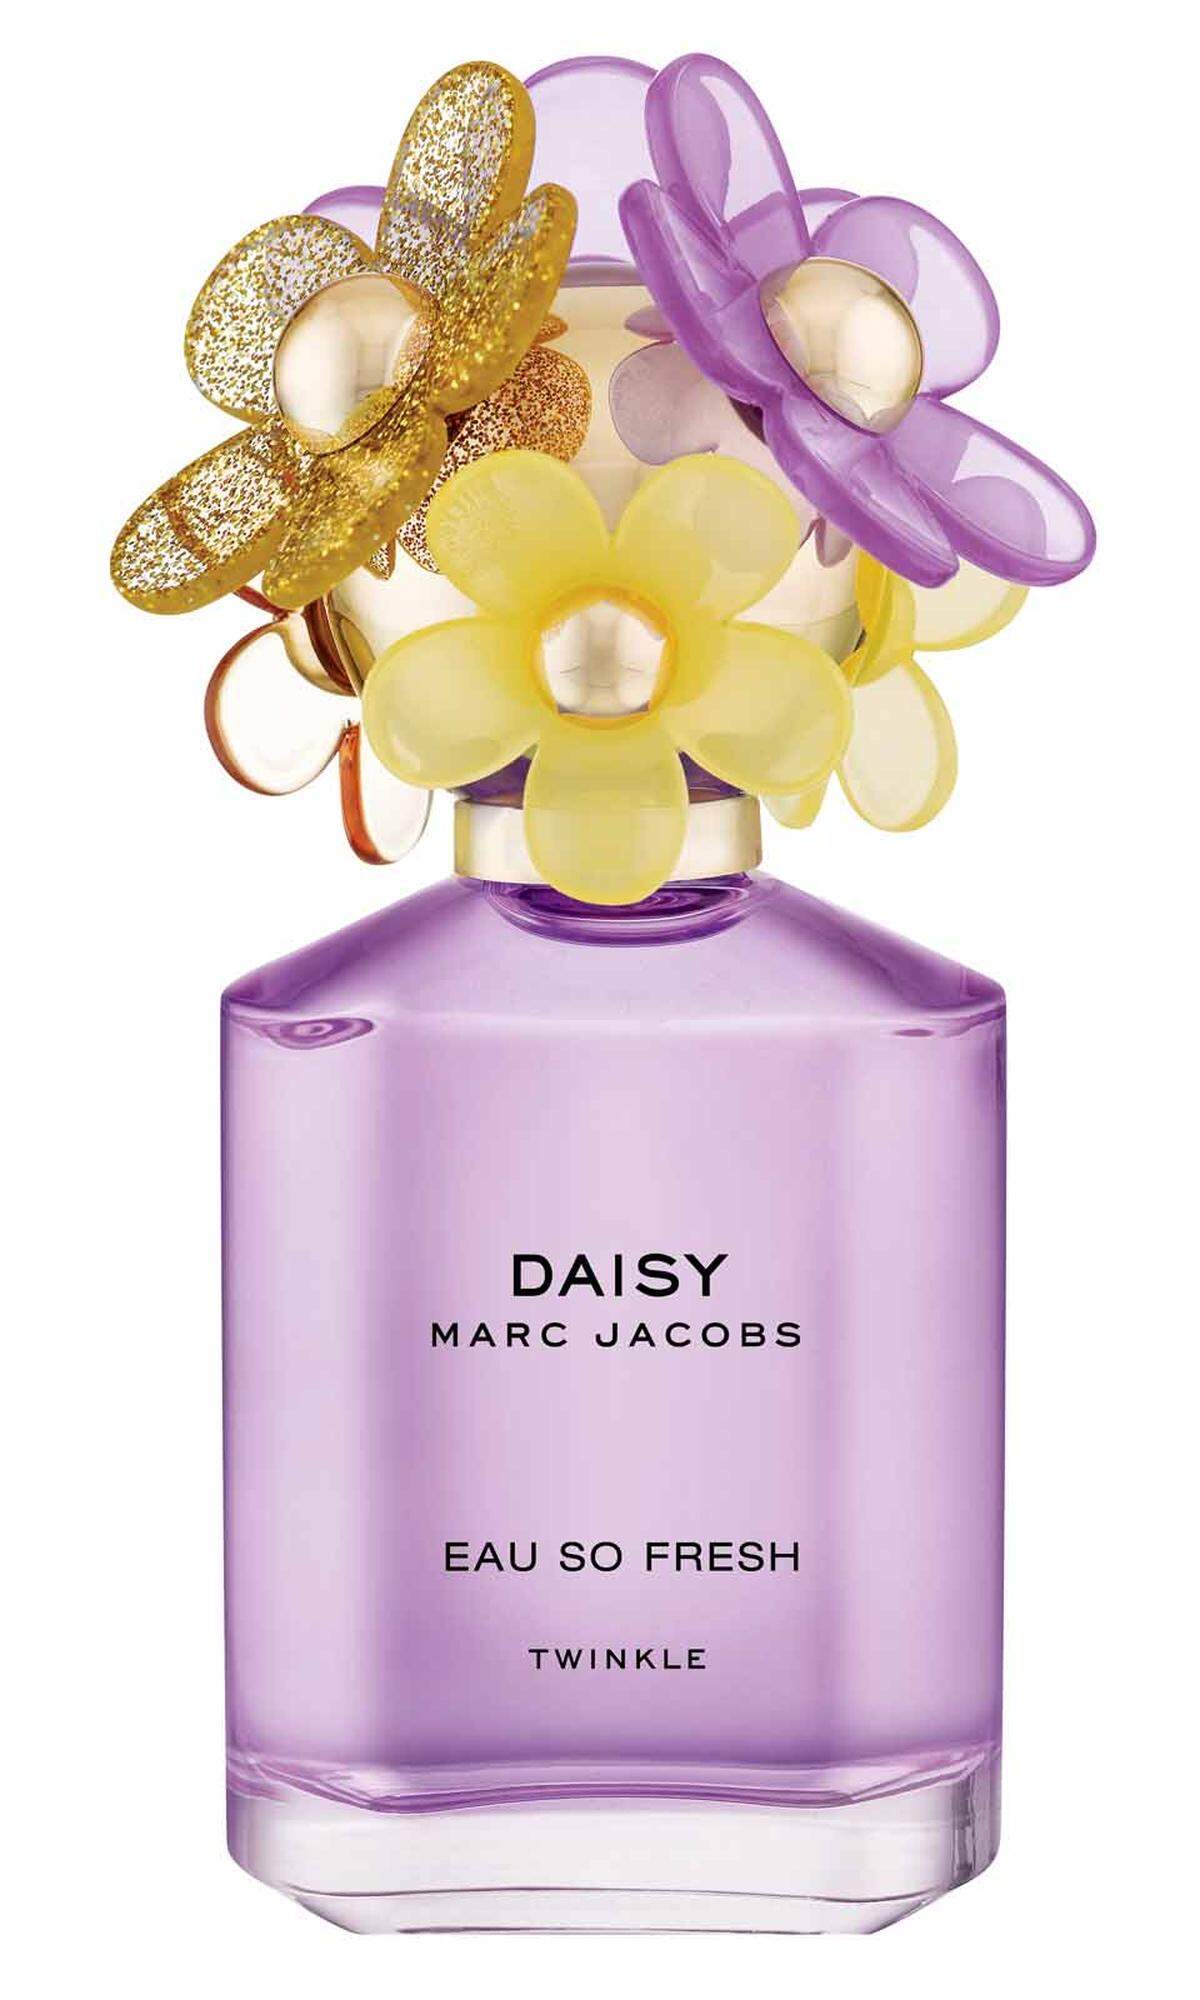 Ein floraler Flakon bringt den gewünschten Duft. Parfum „Daisy“ von Marc Jacobs, 75 ml, 76,95 Euro, im Fachhandel erhältlich.